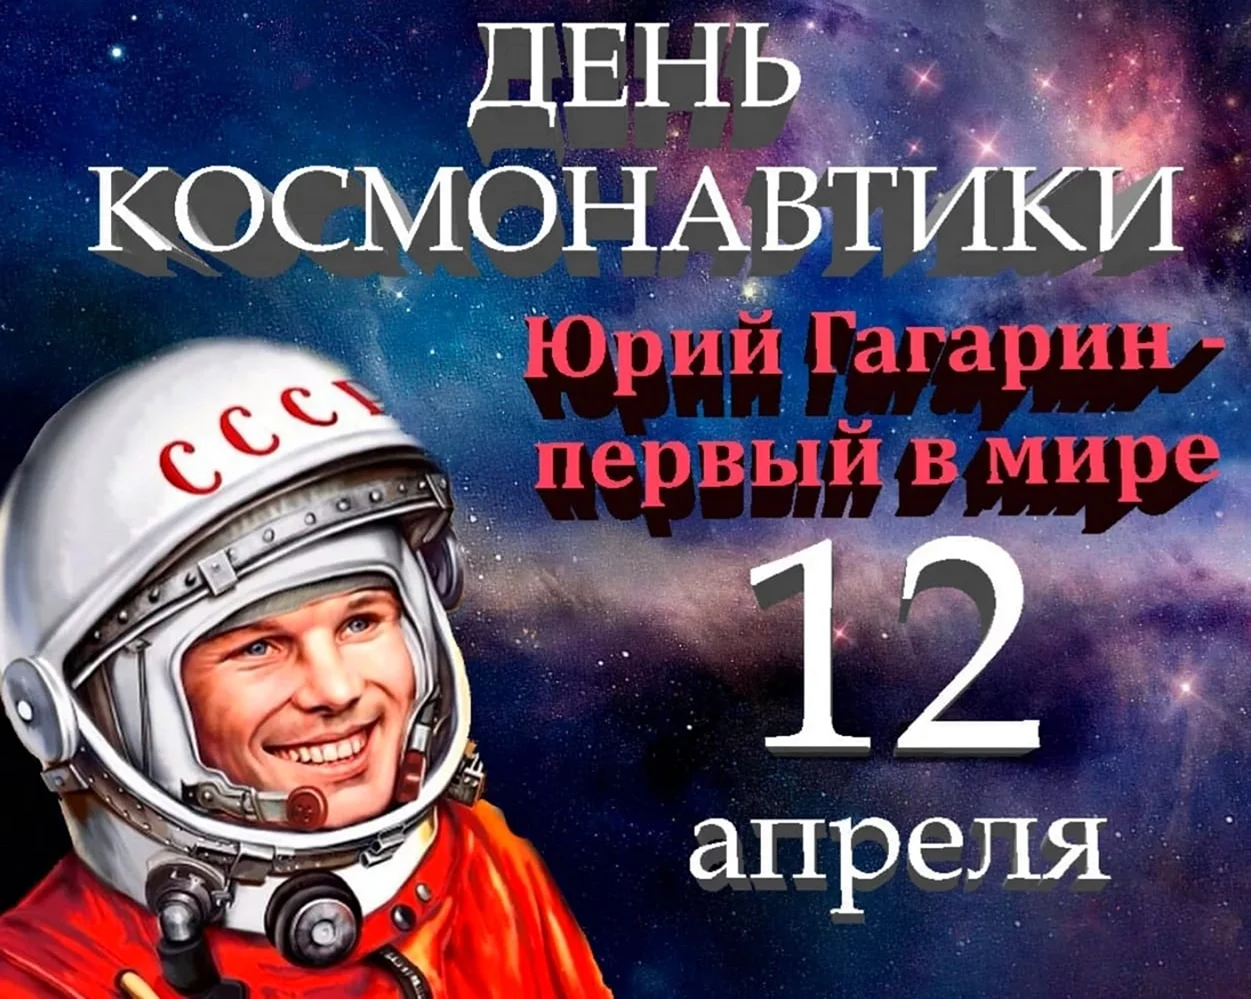 12 Апреля Всемирный день авиации и космонавтики. Поздравление